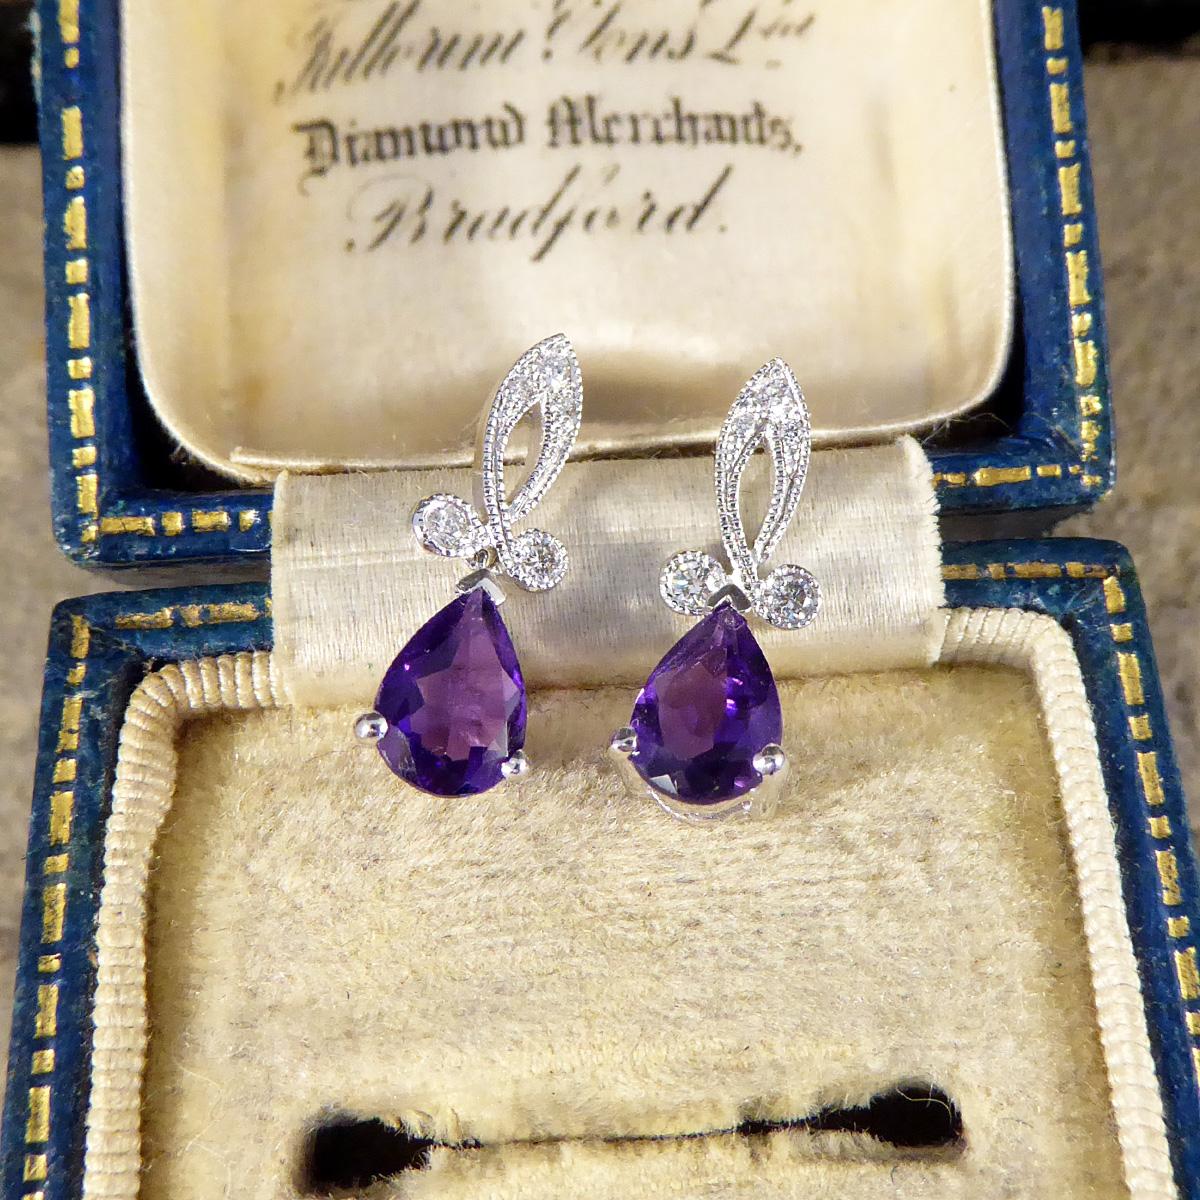 Dieses schöne Paar Ohrringe wurde in feiner Handarbeit gefertigt und erinnert an ein Stück aus der Art déco-Zeit. Das zierliche, mit Diamanten besetzte Looping-Design mit Millegrian-Fassung verleiht dem Schmuckstück aus 18-karätigem Weißgold die